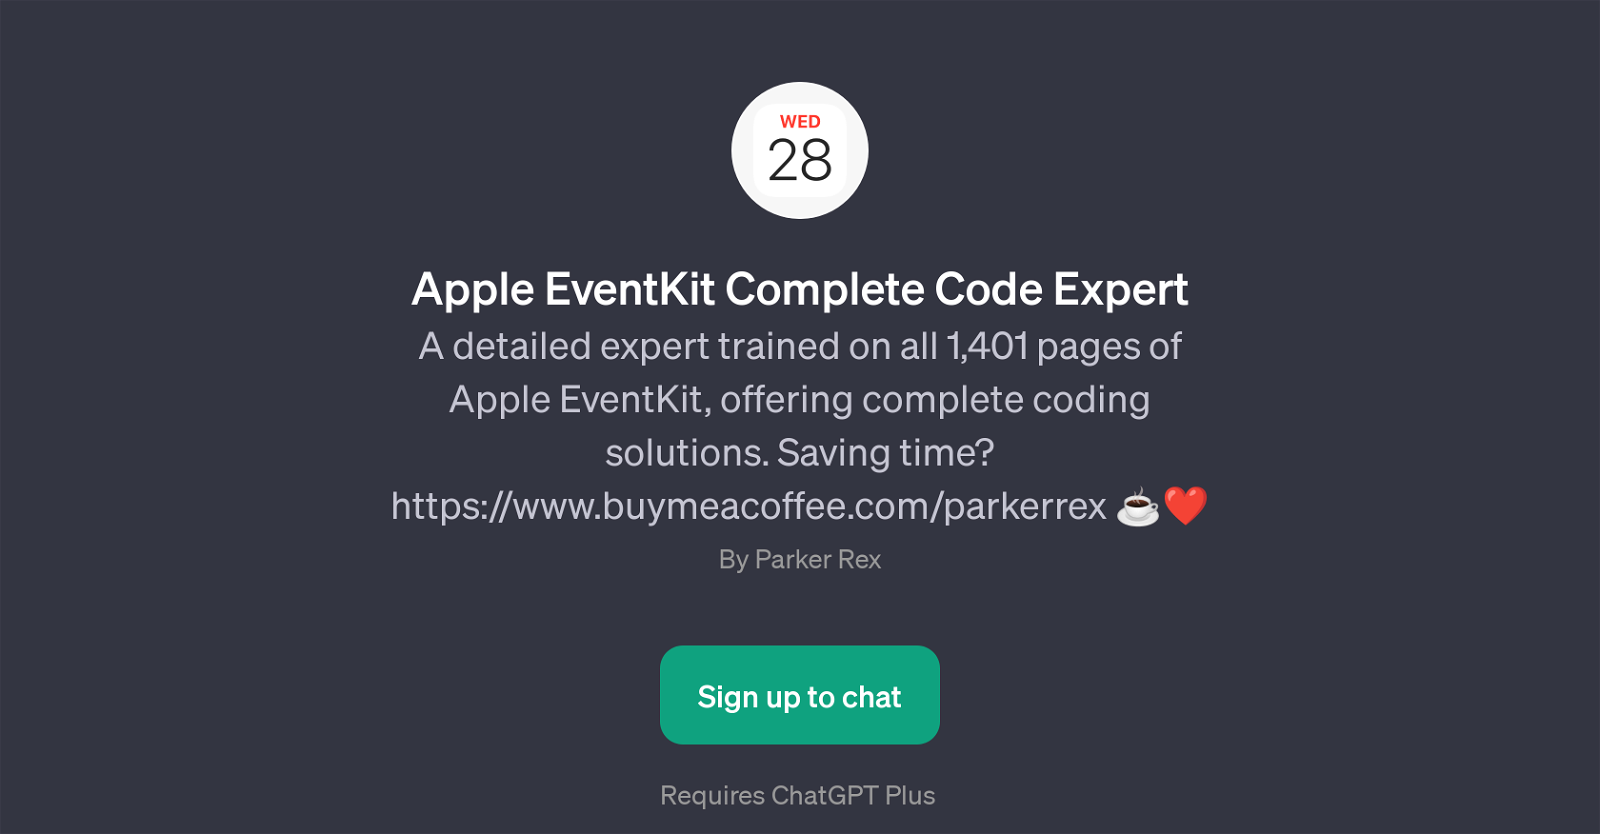 Apple EventKit Complete Code Expert website